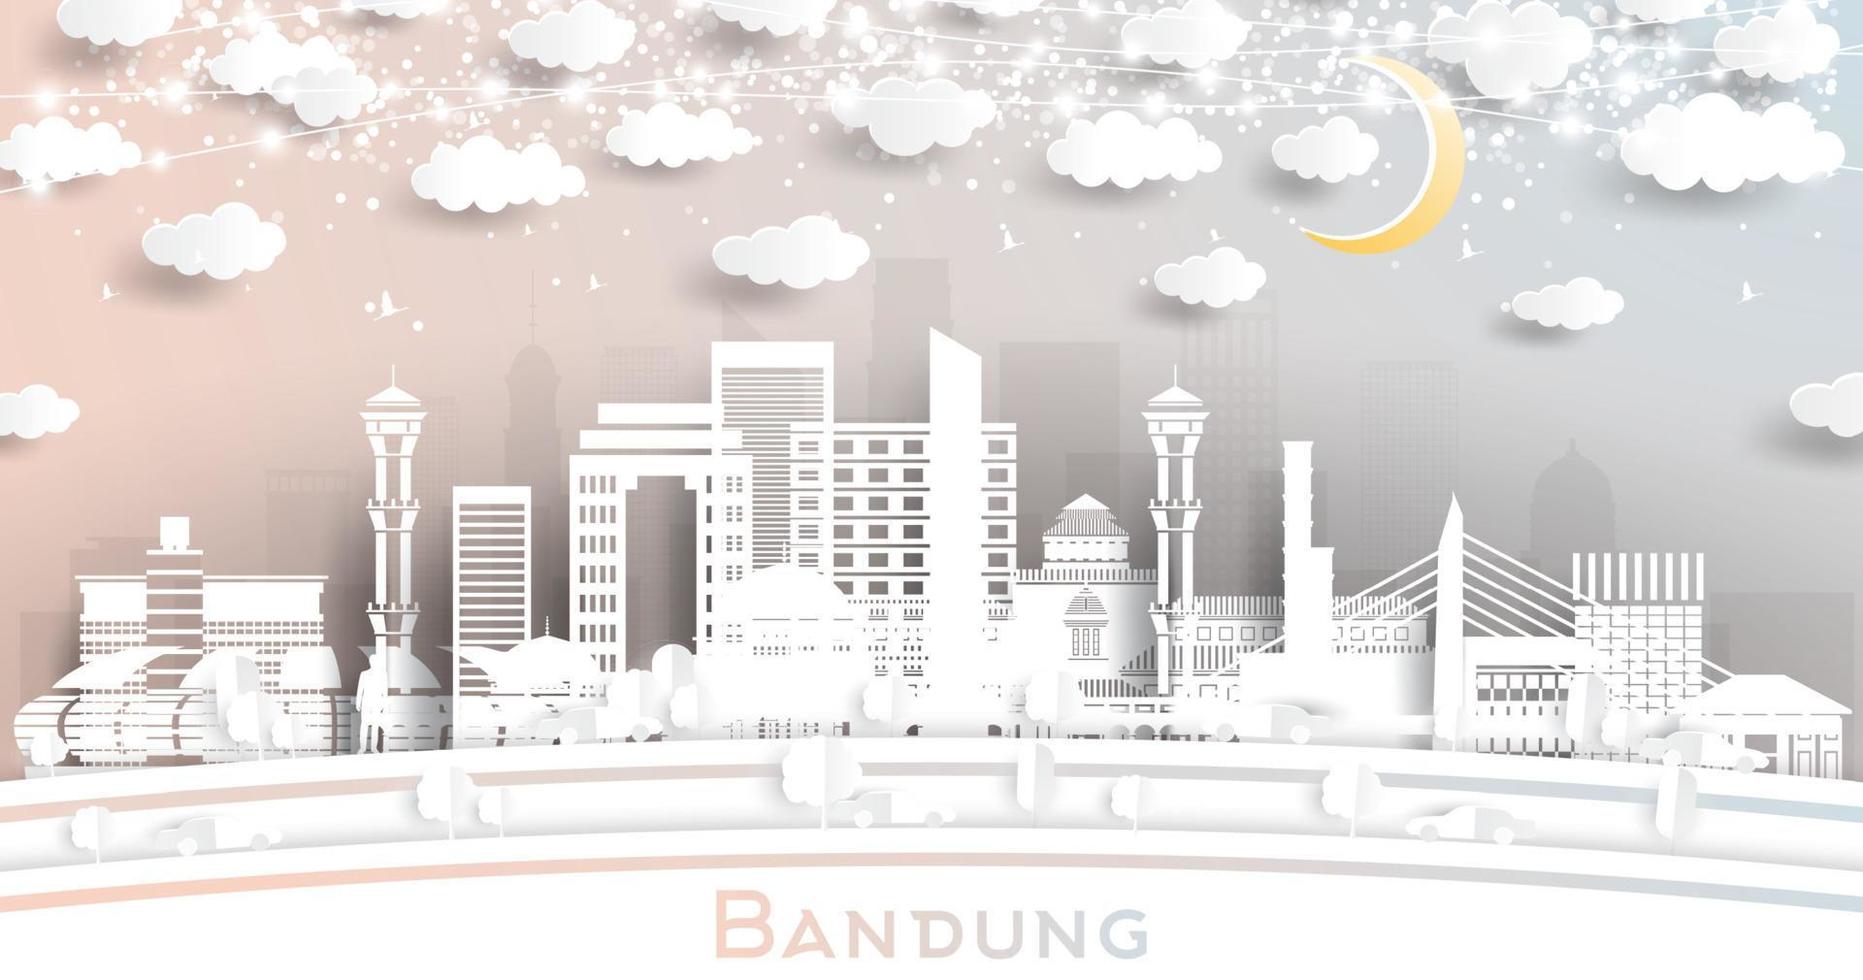 el horizonte de la ciudad de bandung indonesia en estilo de corte de papel con edificios blancos, luna y guirnalda de neón. vector